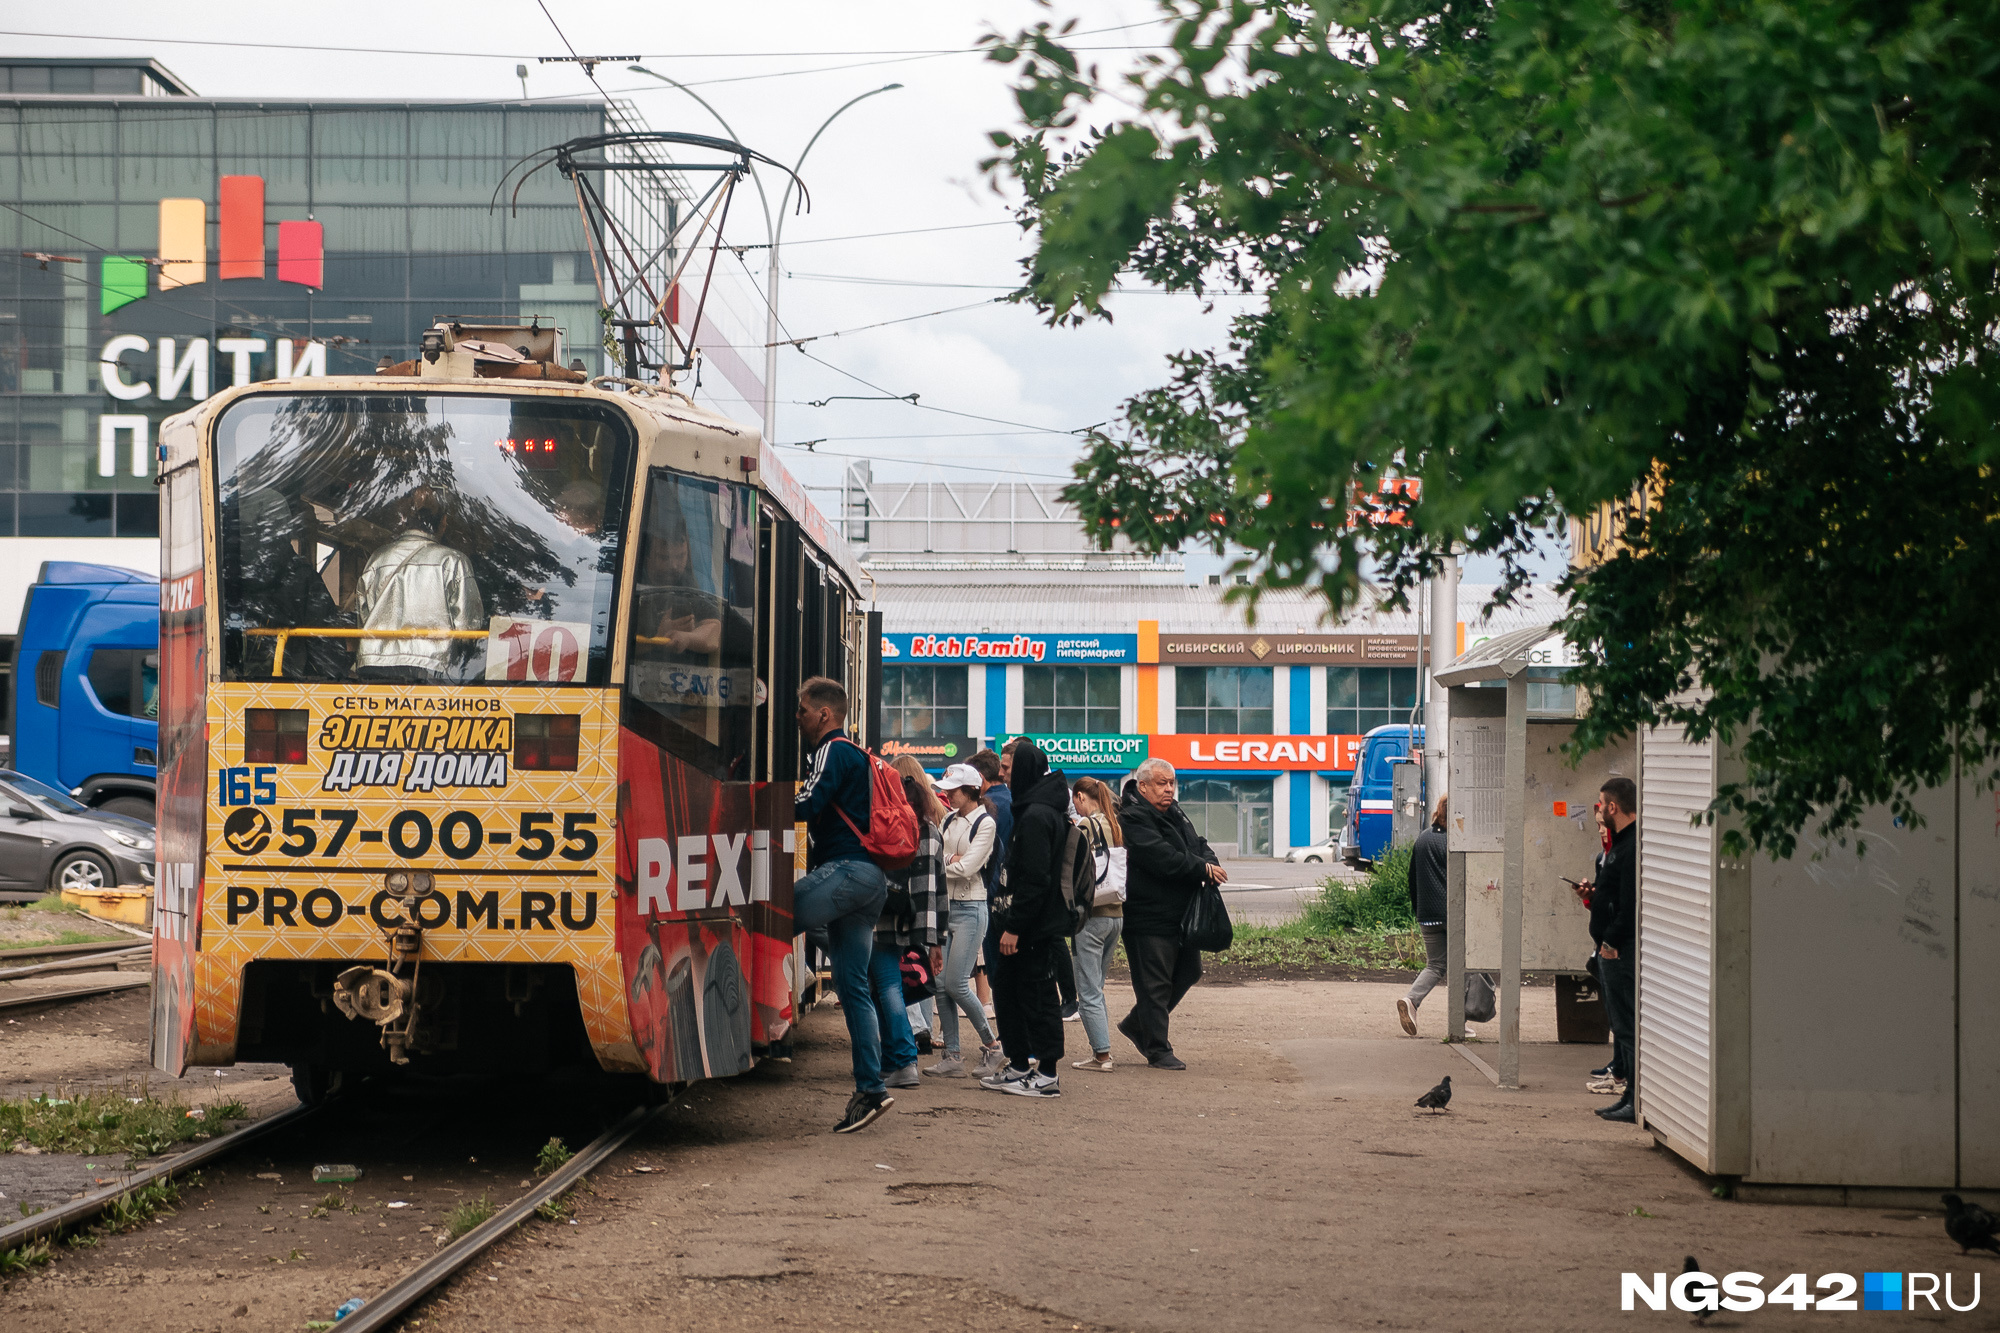 «Страшно или нет, а ехать надо»: прокатились по всем трамвайным маршрутам Кемерова и узнали, в каком состоянии вагоны